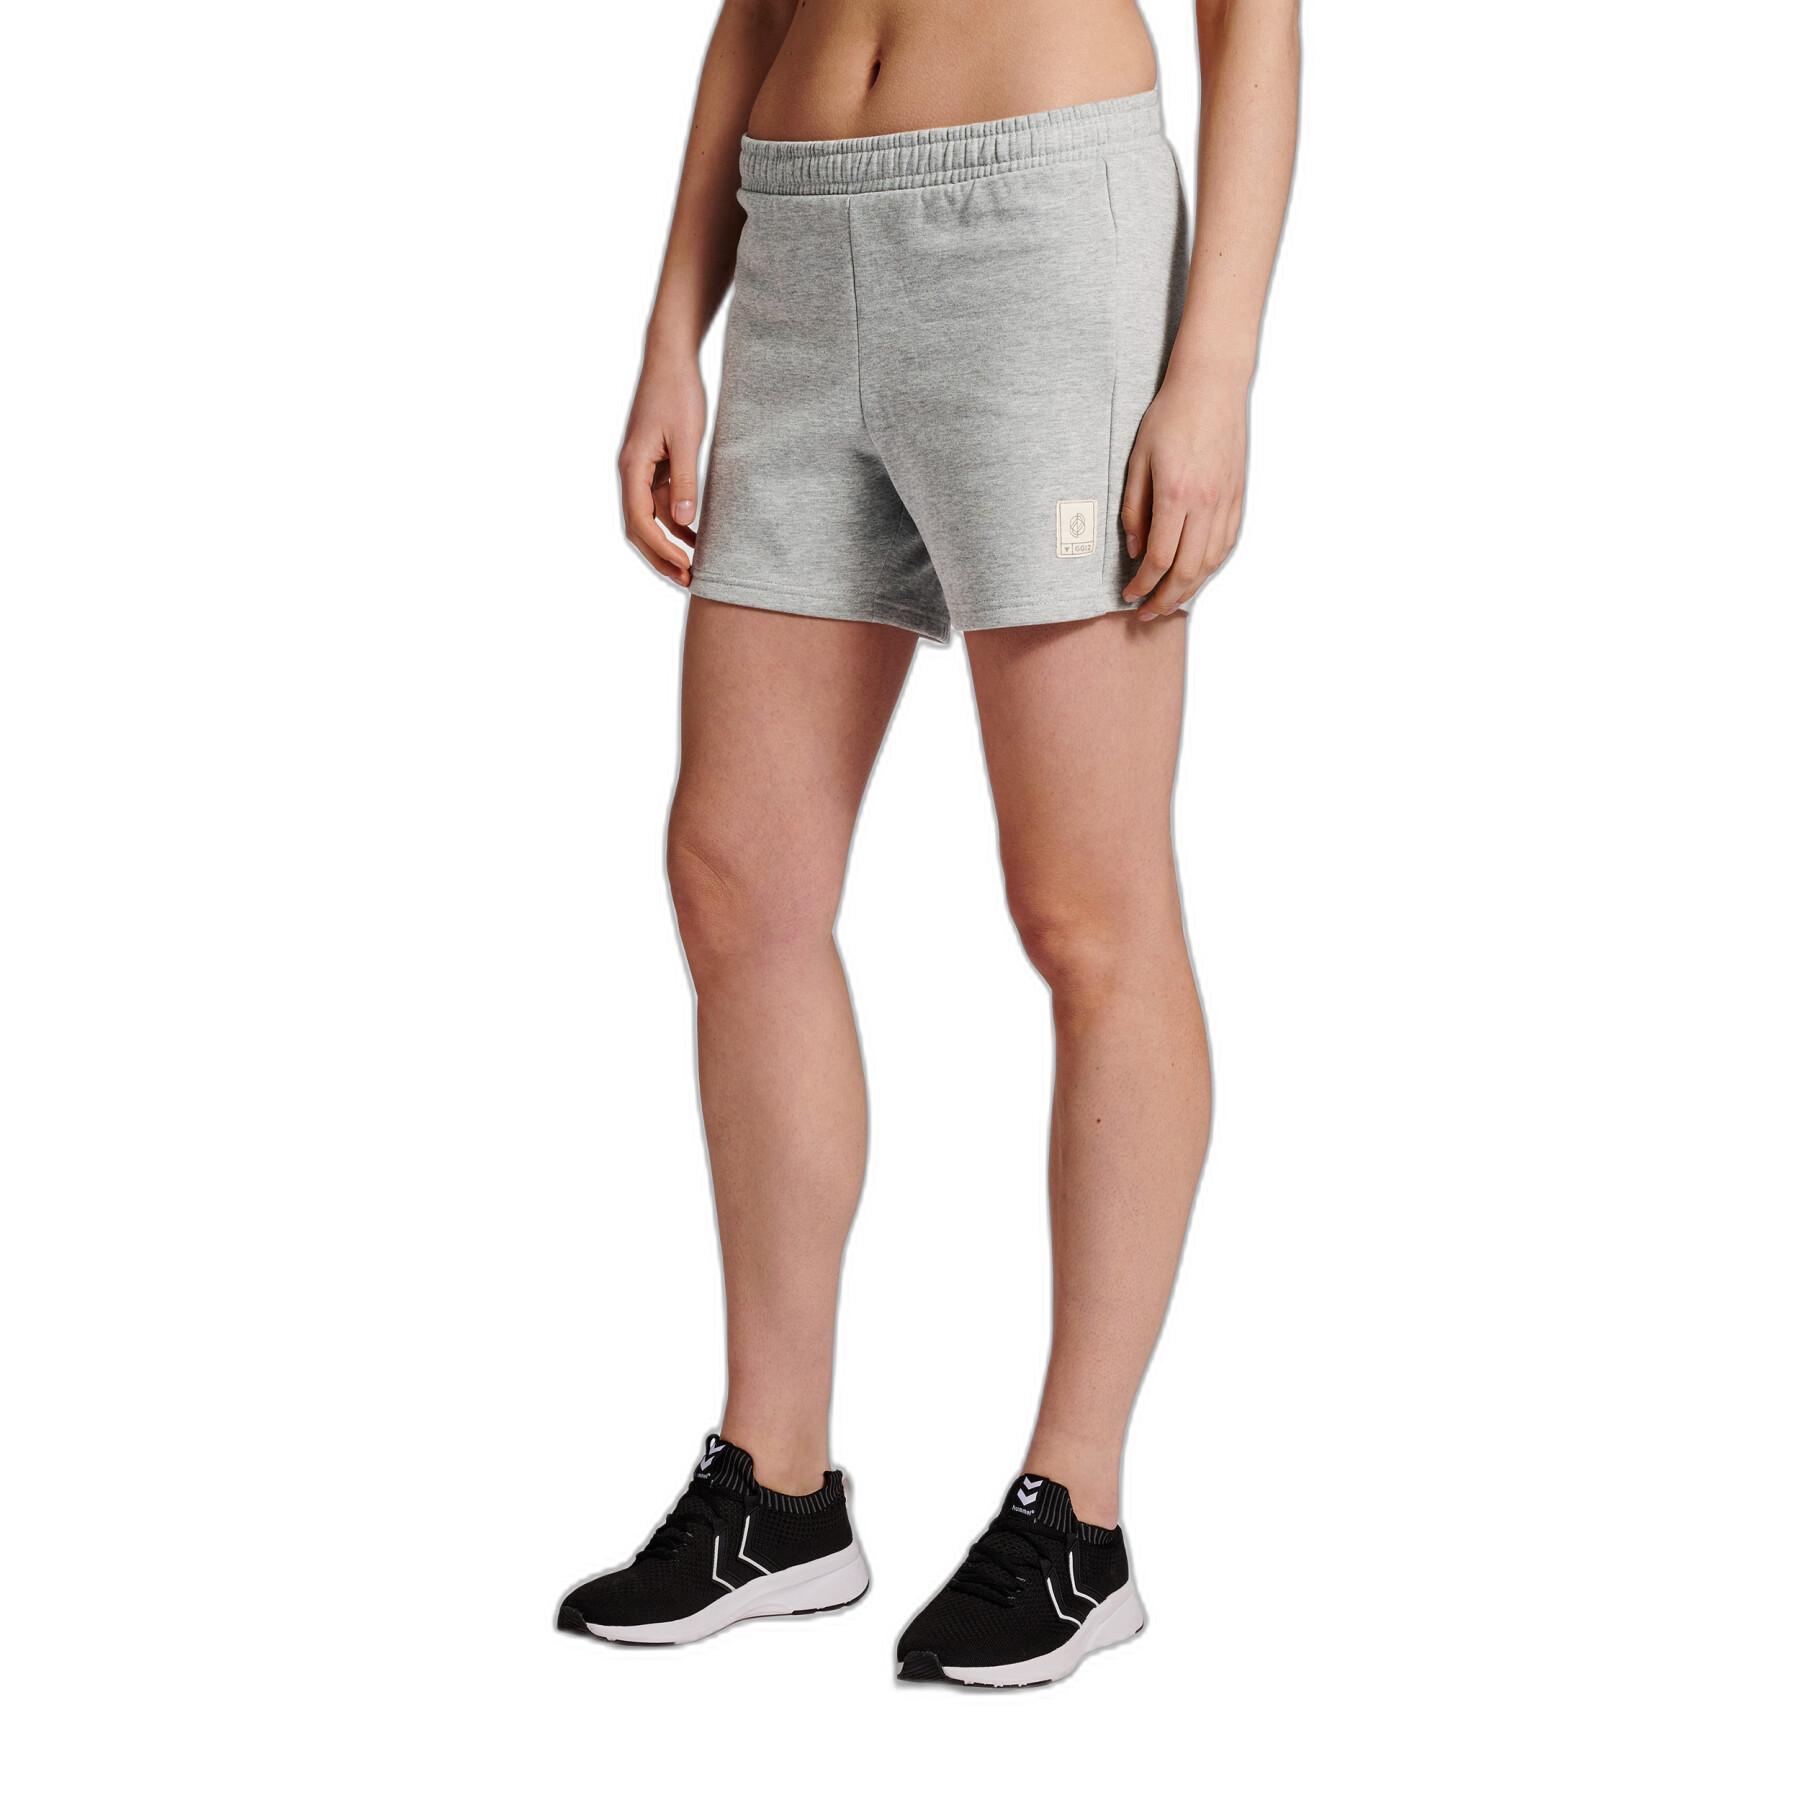 Women's shorts Hummel GG - 12